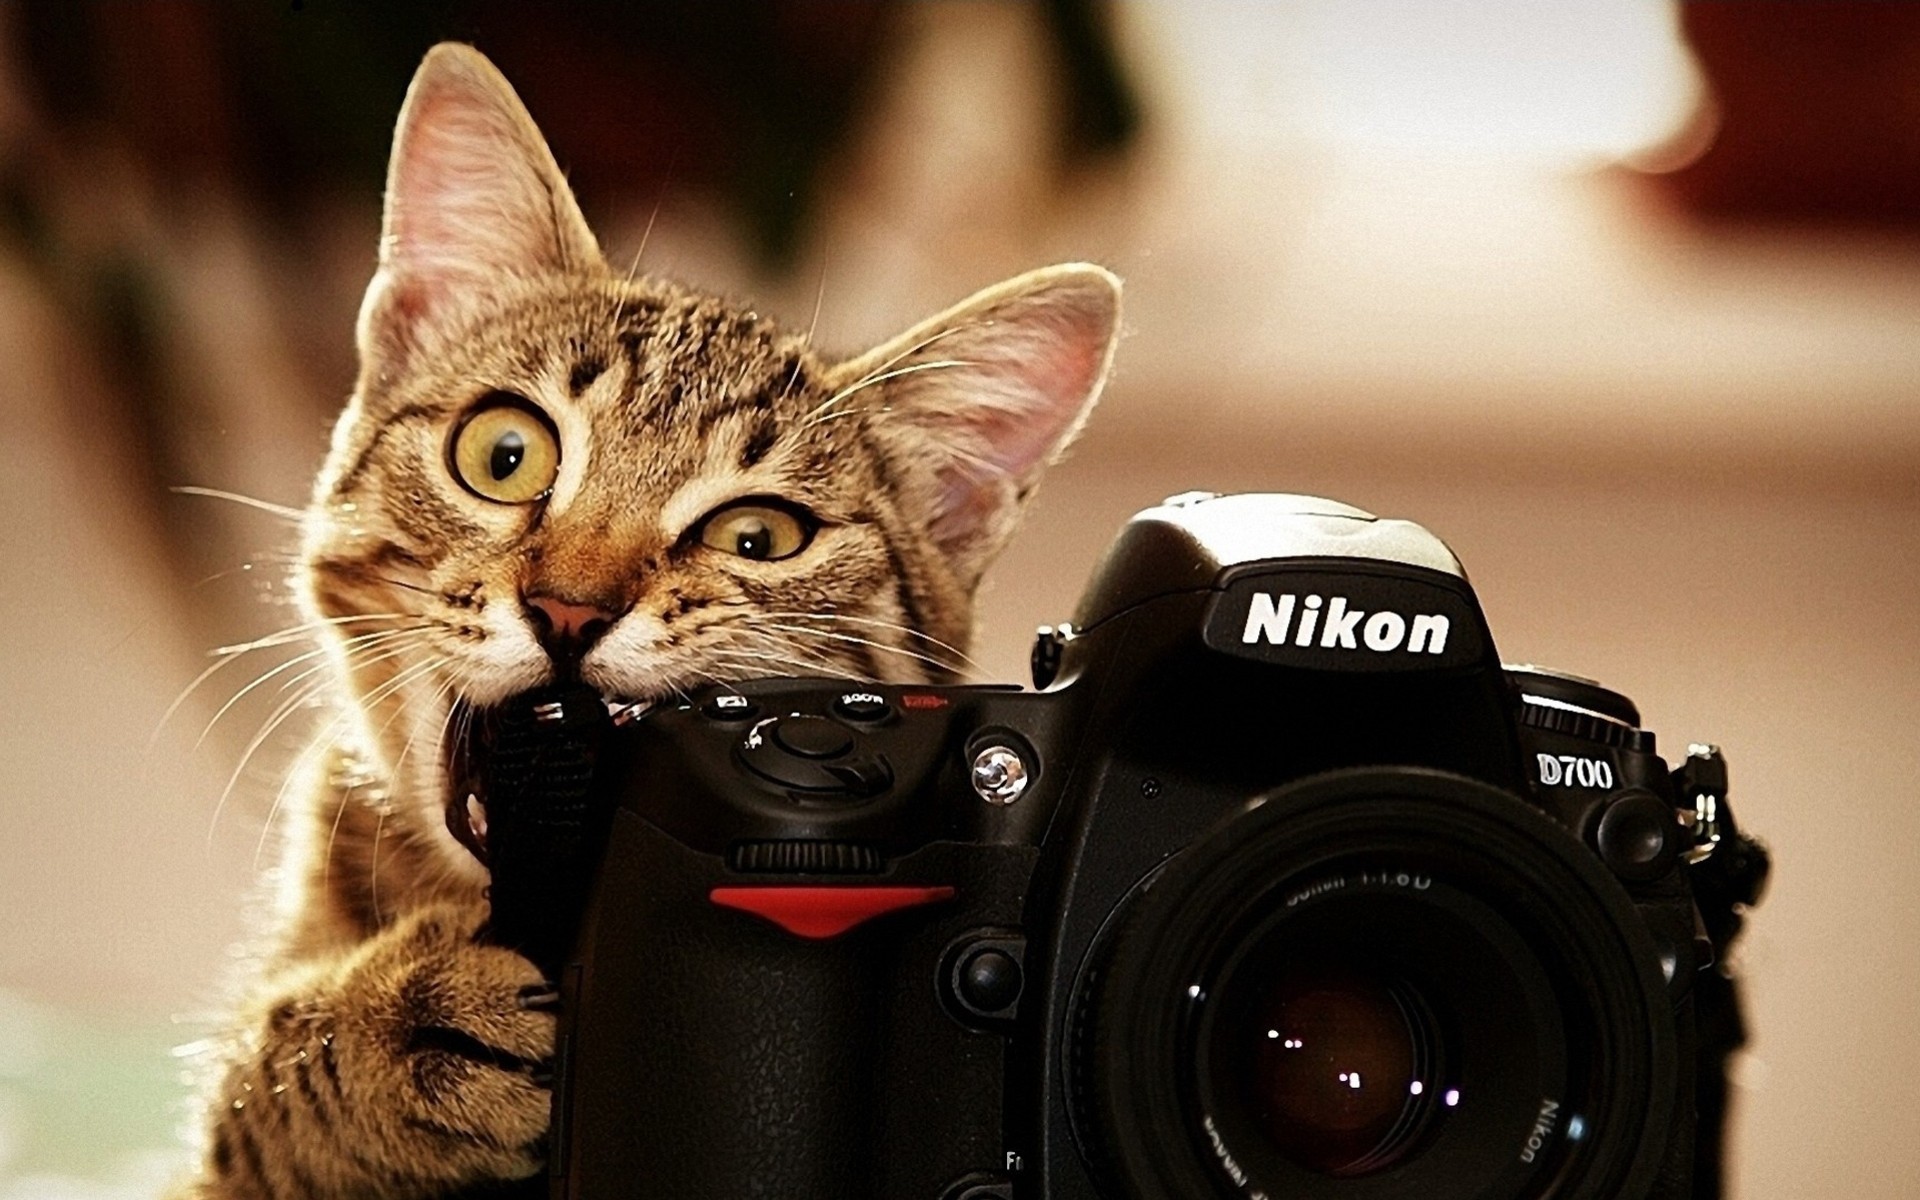 the camera nikon situation fun cat